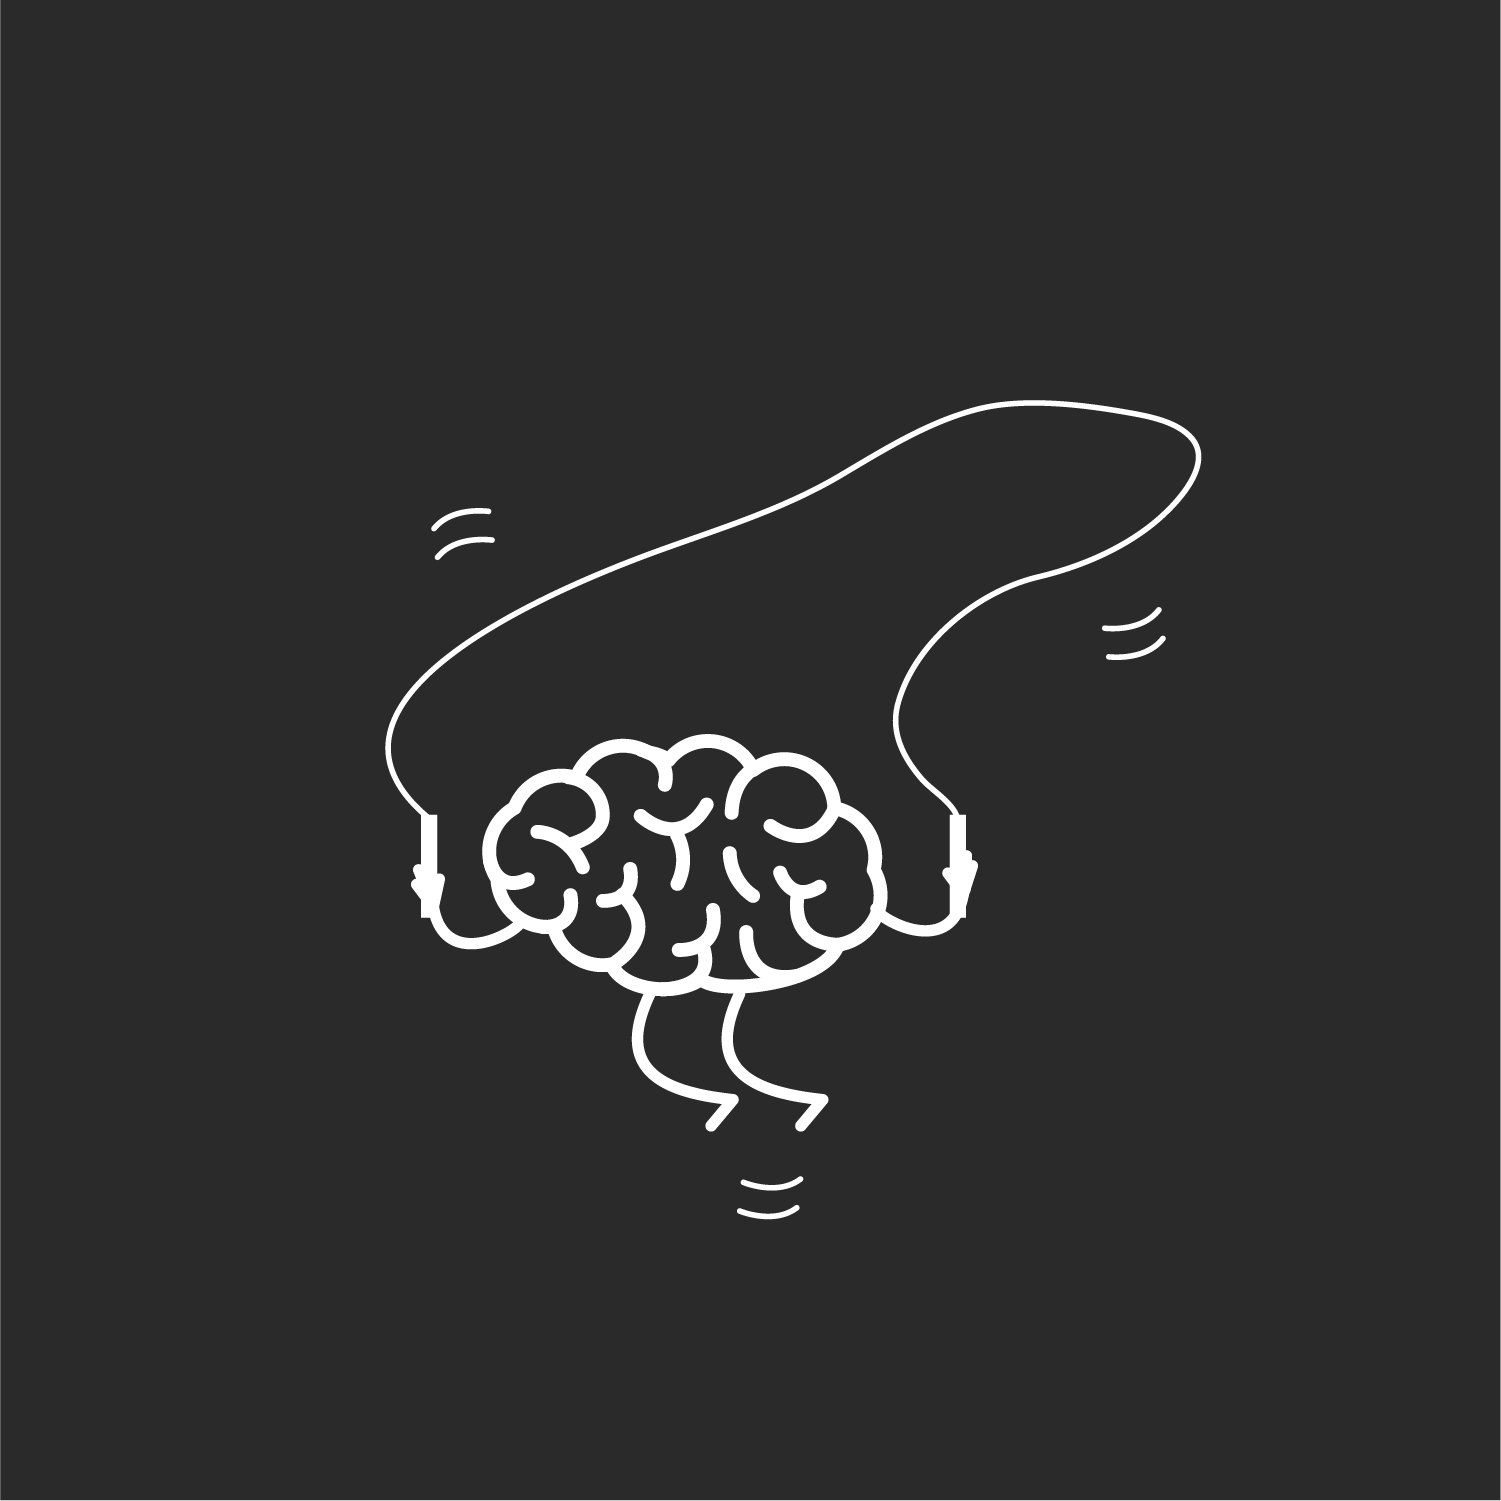 Grafik eines seilspringenden Gehirns auf grauem Hintergrund